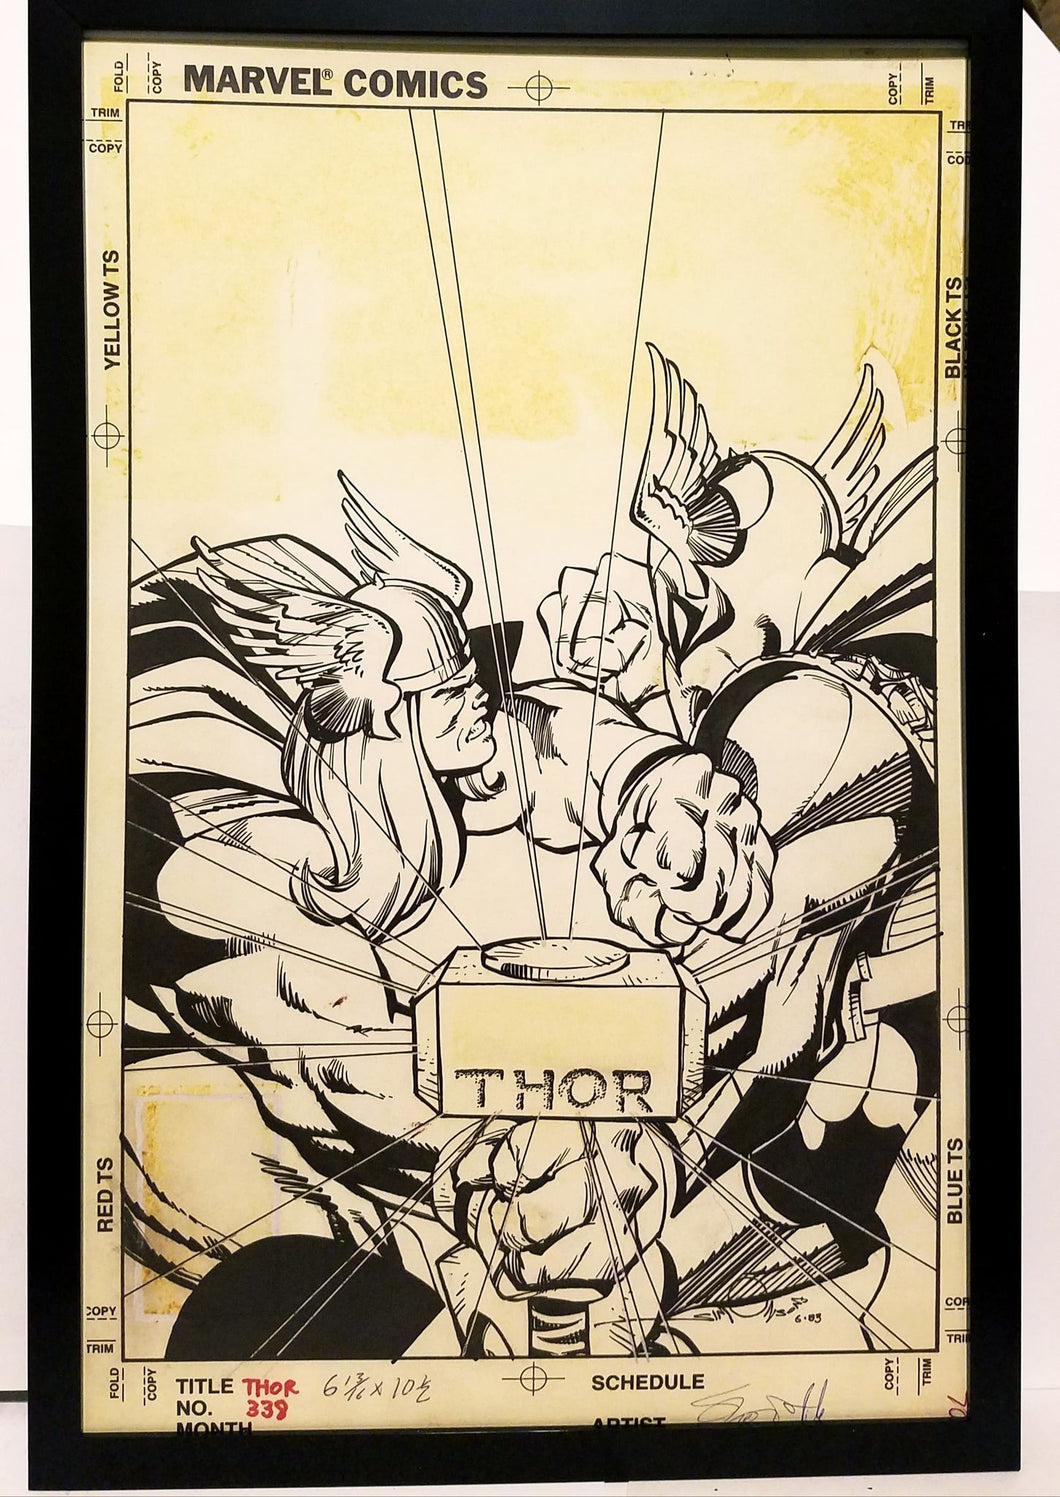 Thor #338 by Walt Simonson 11x17 FRAMED Original Art Poster Marvel Comics